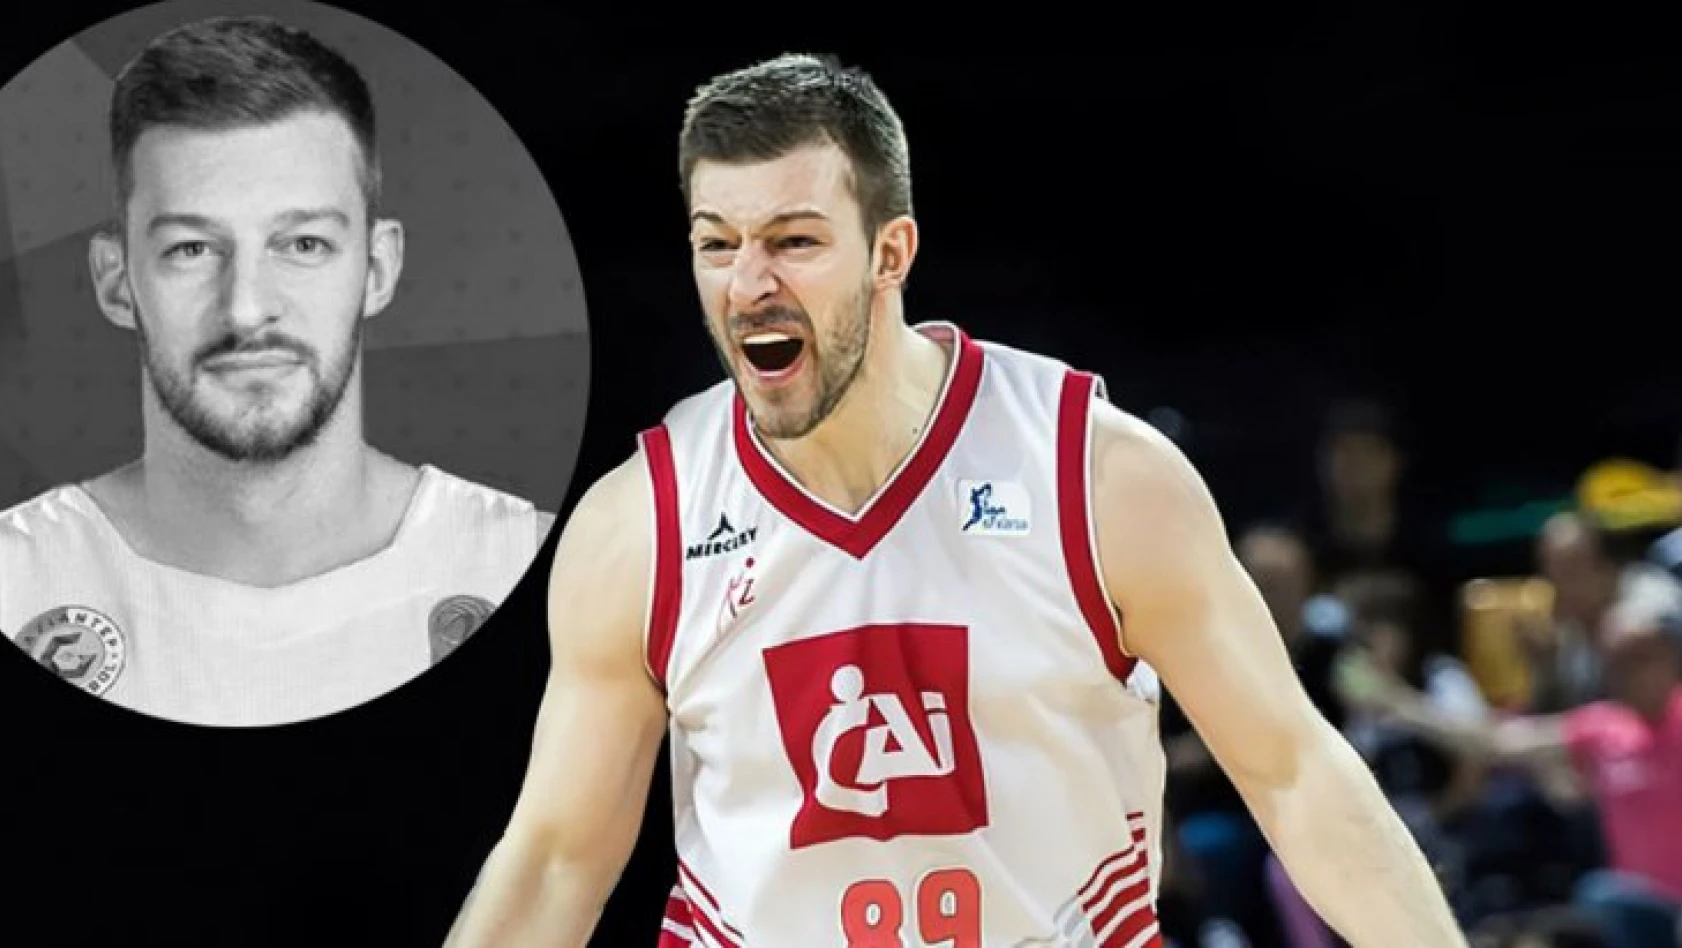 Basketbolcu Stevan Jelovac, 32 yaşında hayatını kaybetti